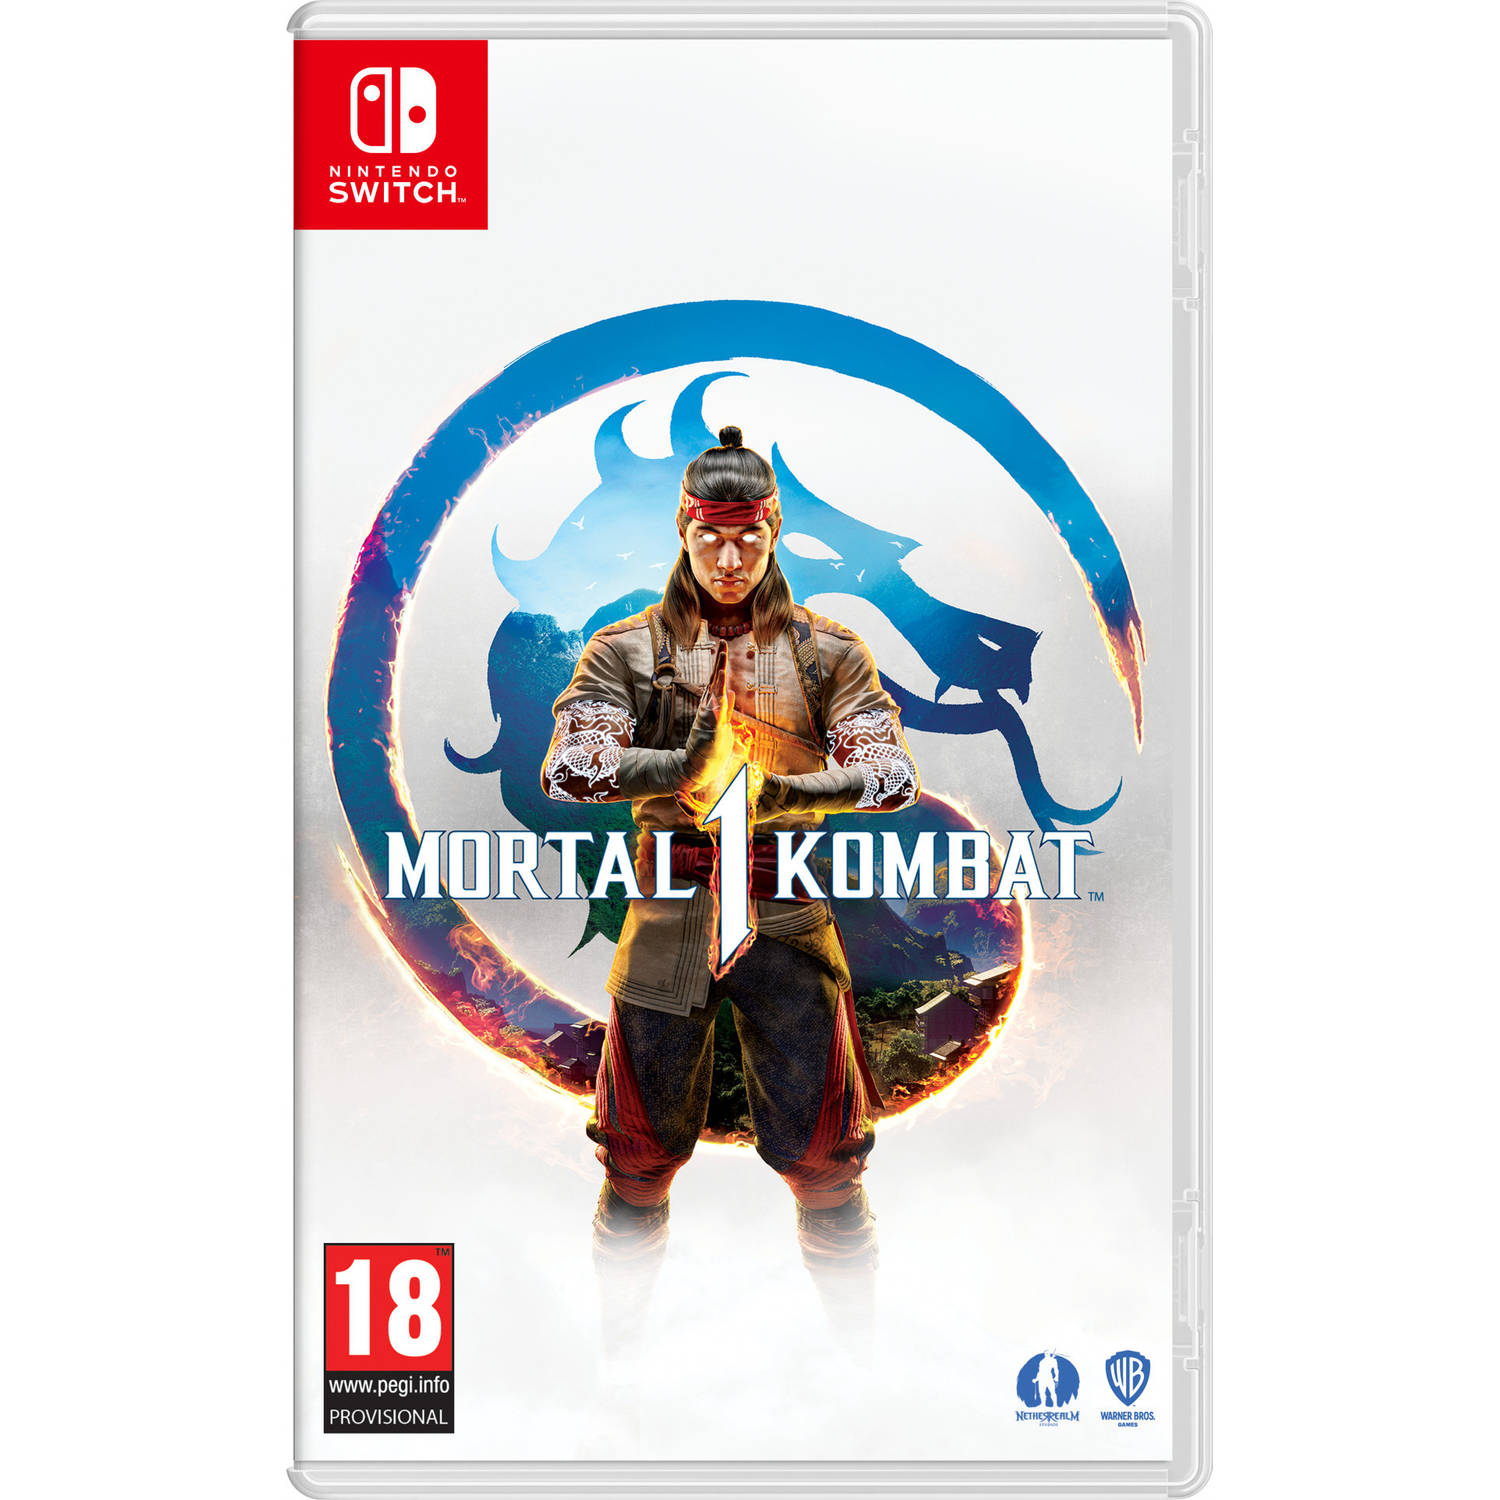 Mortal Kombat 1 + Pre-Order DLC Nintendo Switch